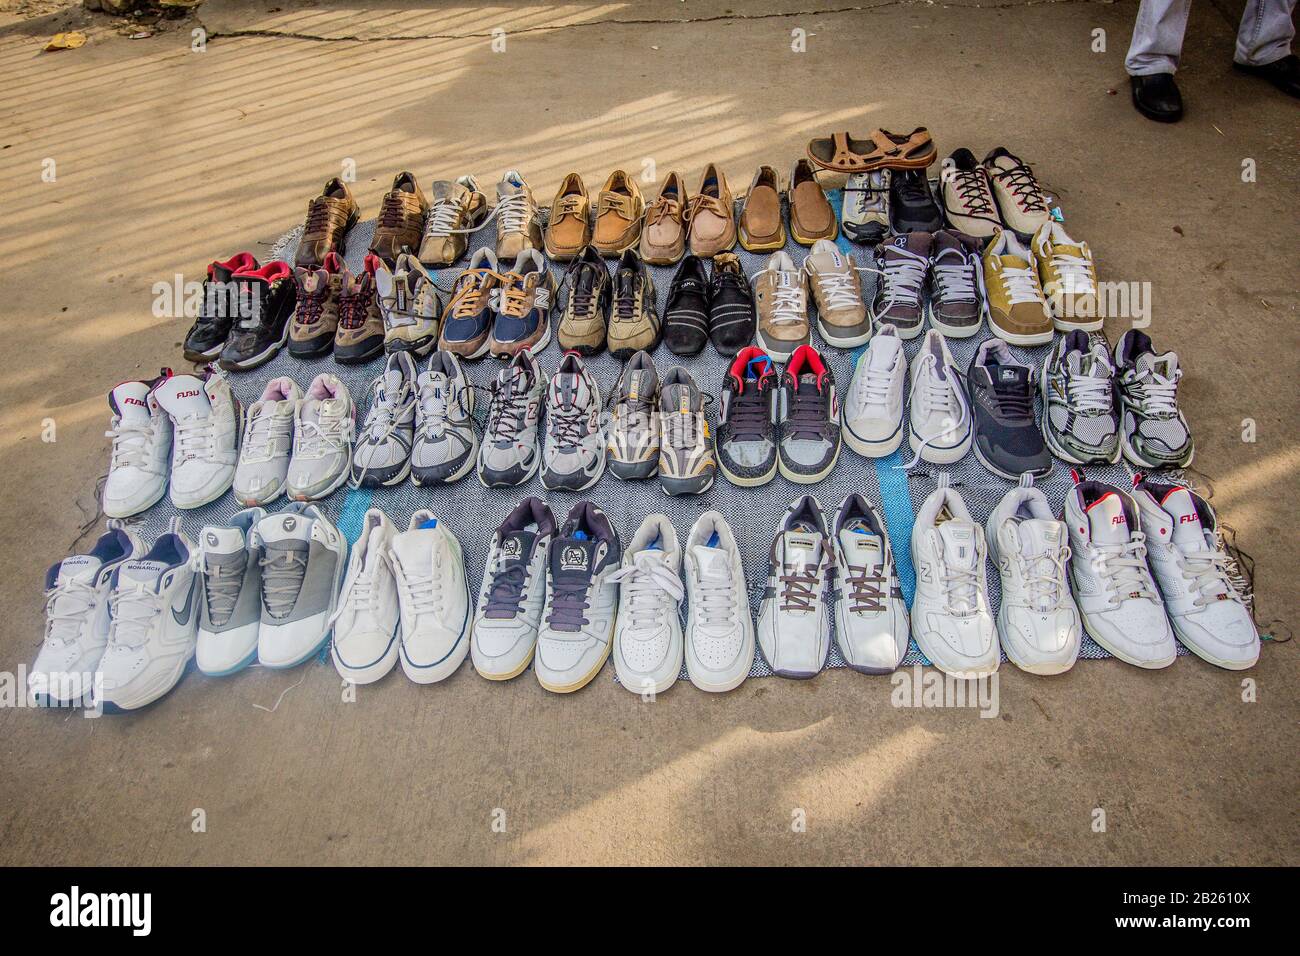 Gebrauchte Schuhe für den Verkauf auf einer Straße in Lagos, Nigeria  Stockfotografie - Alamy